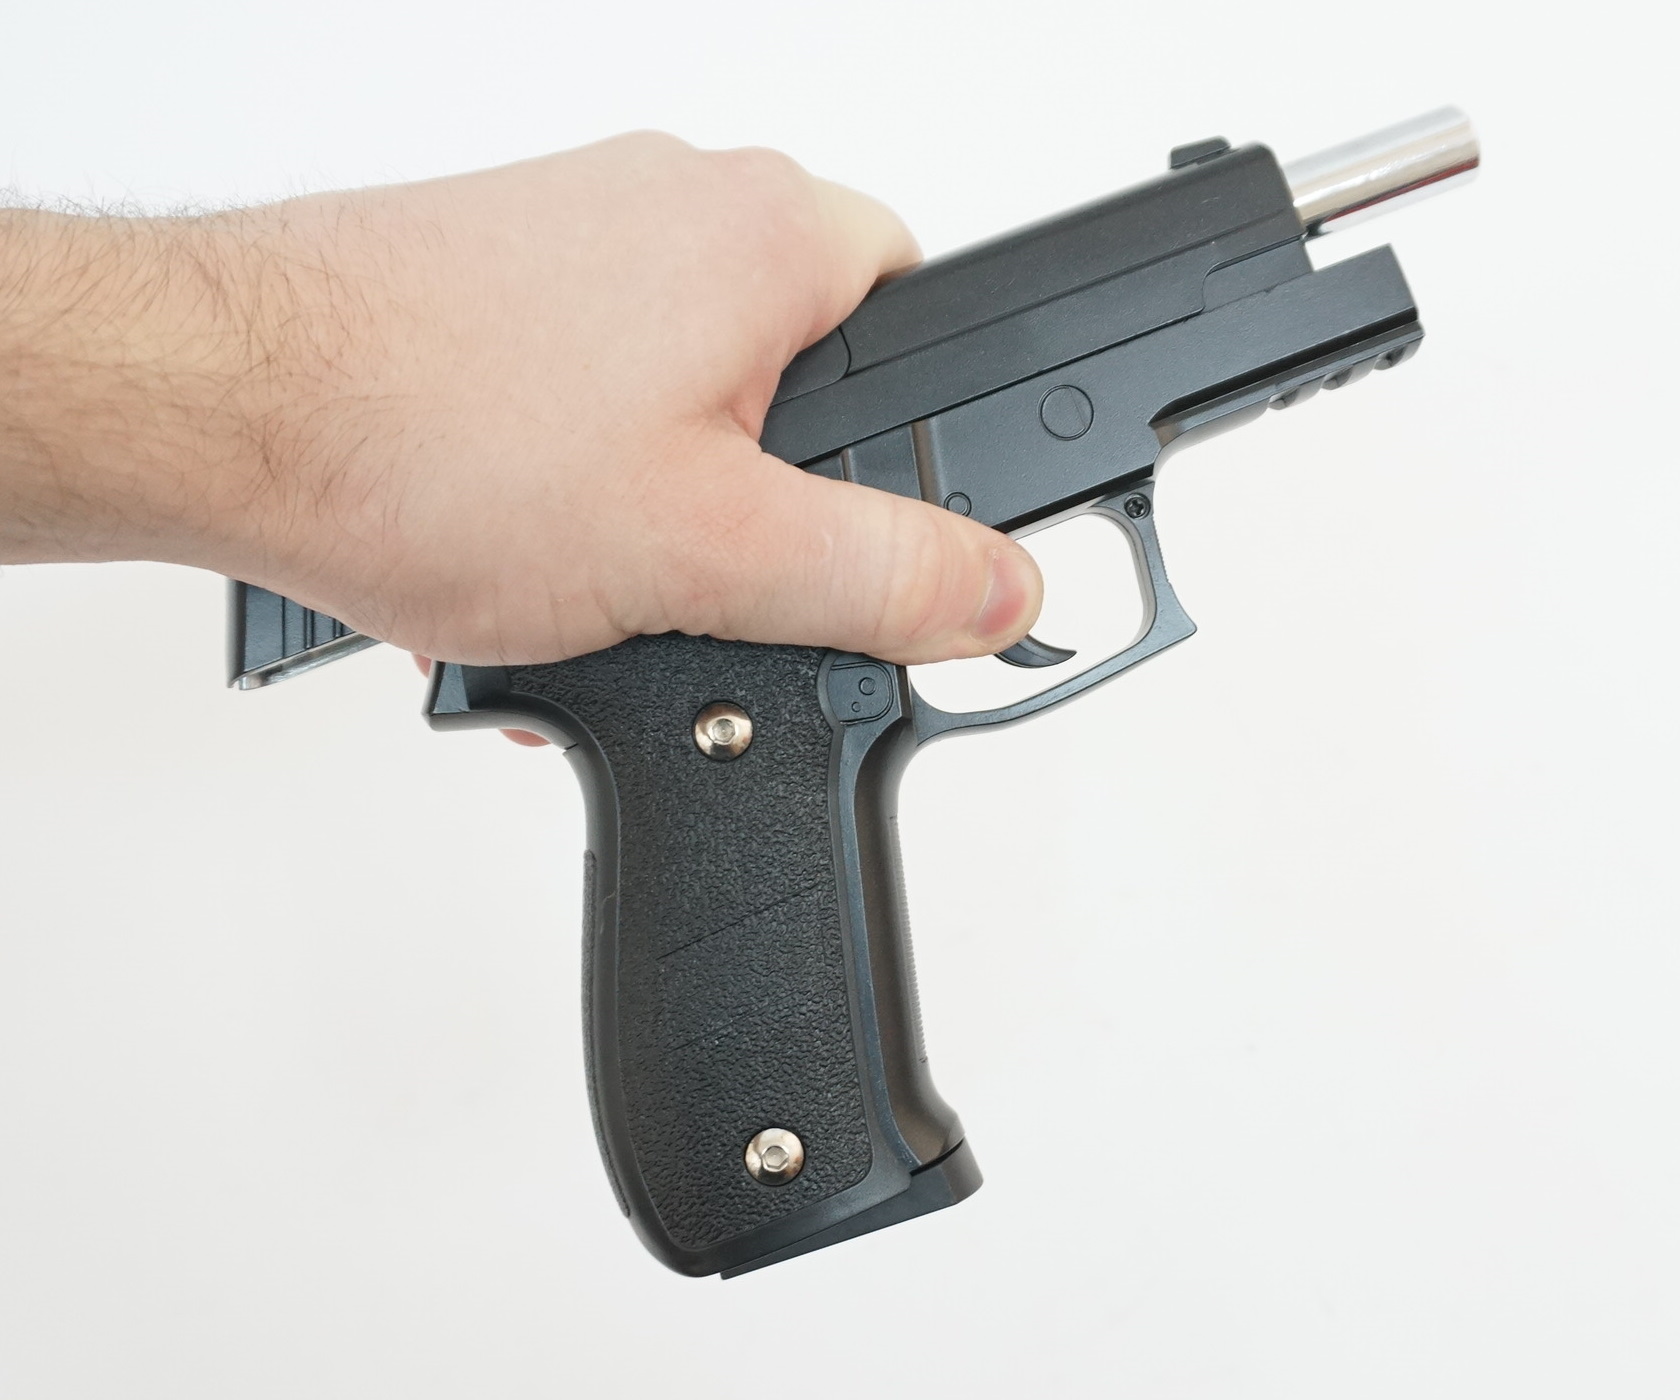 Пистолет пневм Sig Sauer 226, к.6мм (кобура)